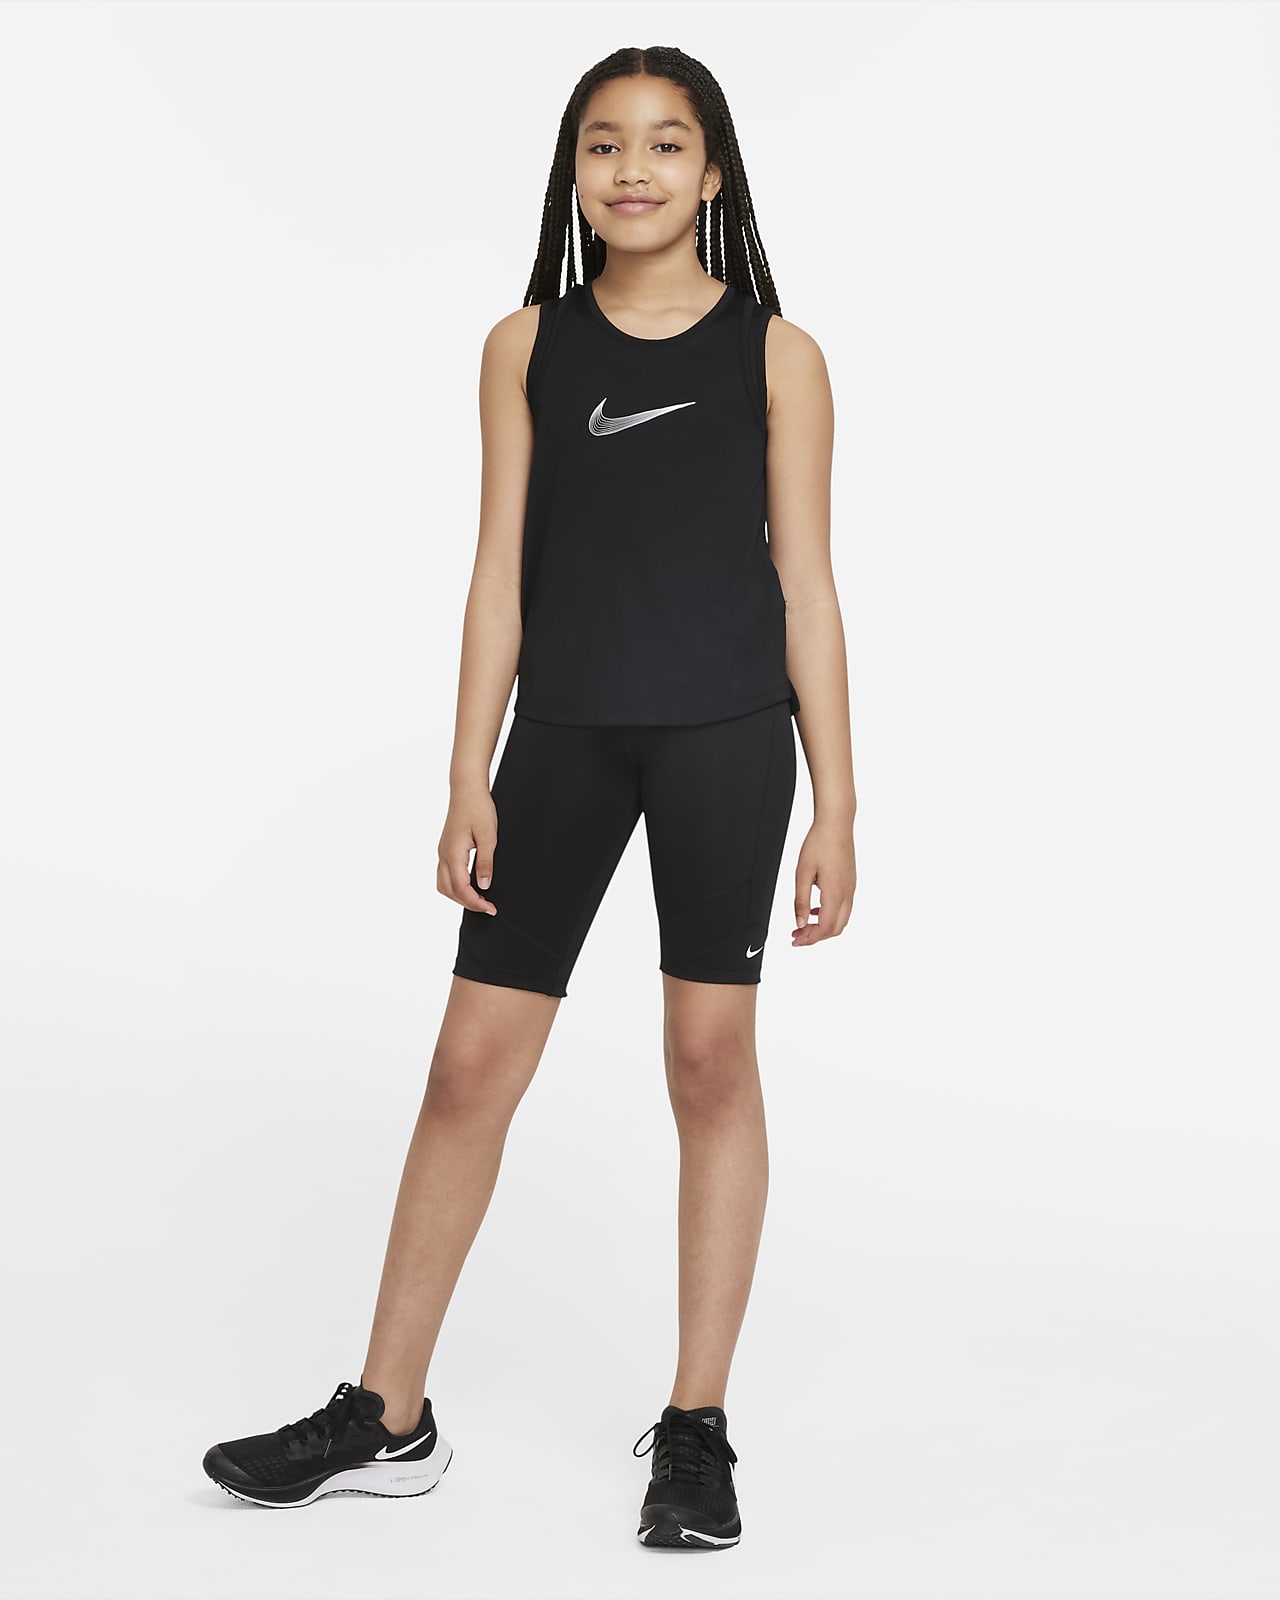 Nike Bike One Shorts. Big Dri-FIT (Girls\') Kids\'